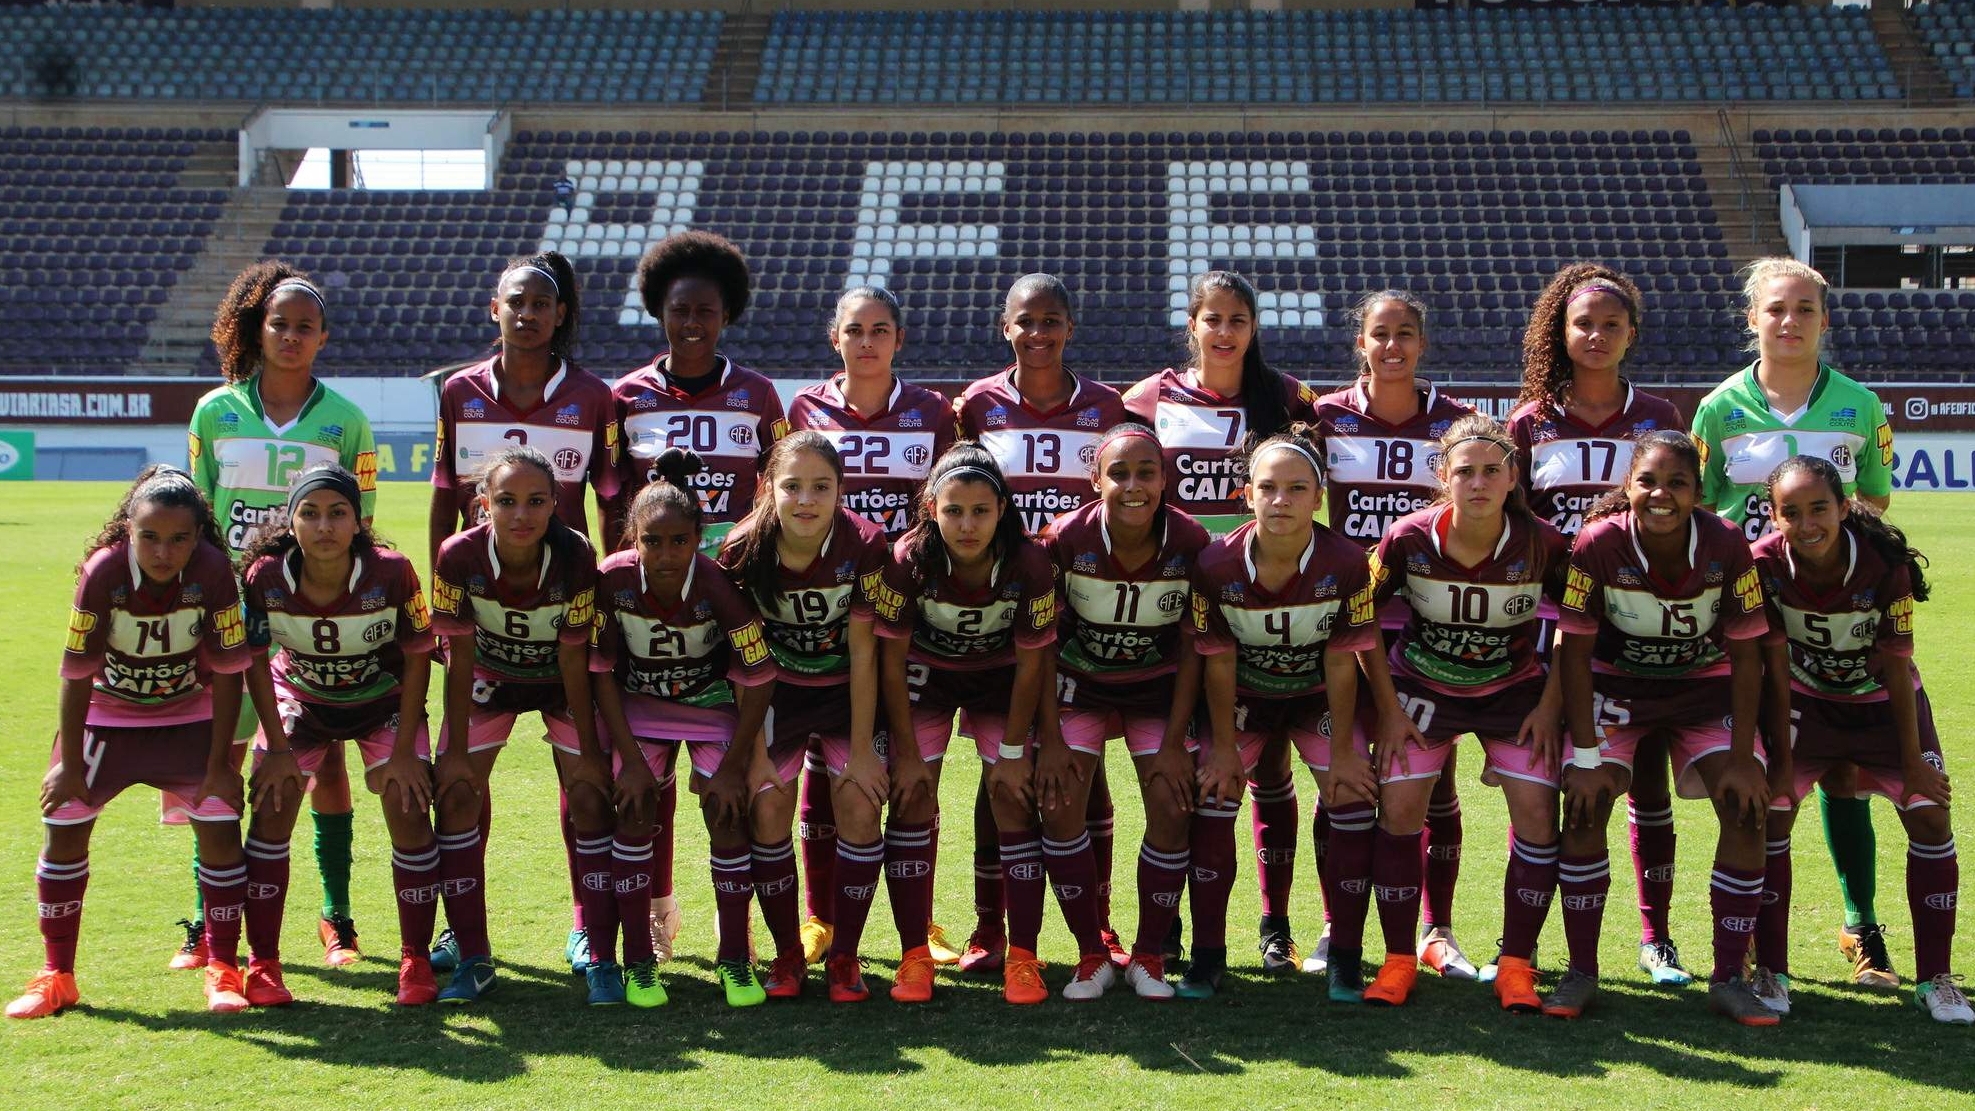 Ferroviária conhece a tabela do Paulista Feminino Sub-17 2022